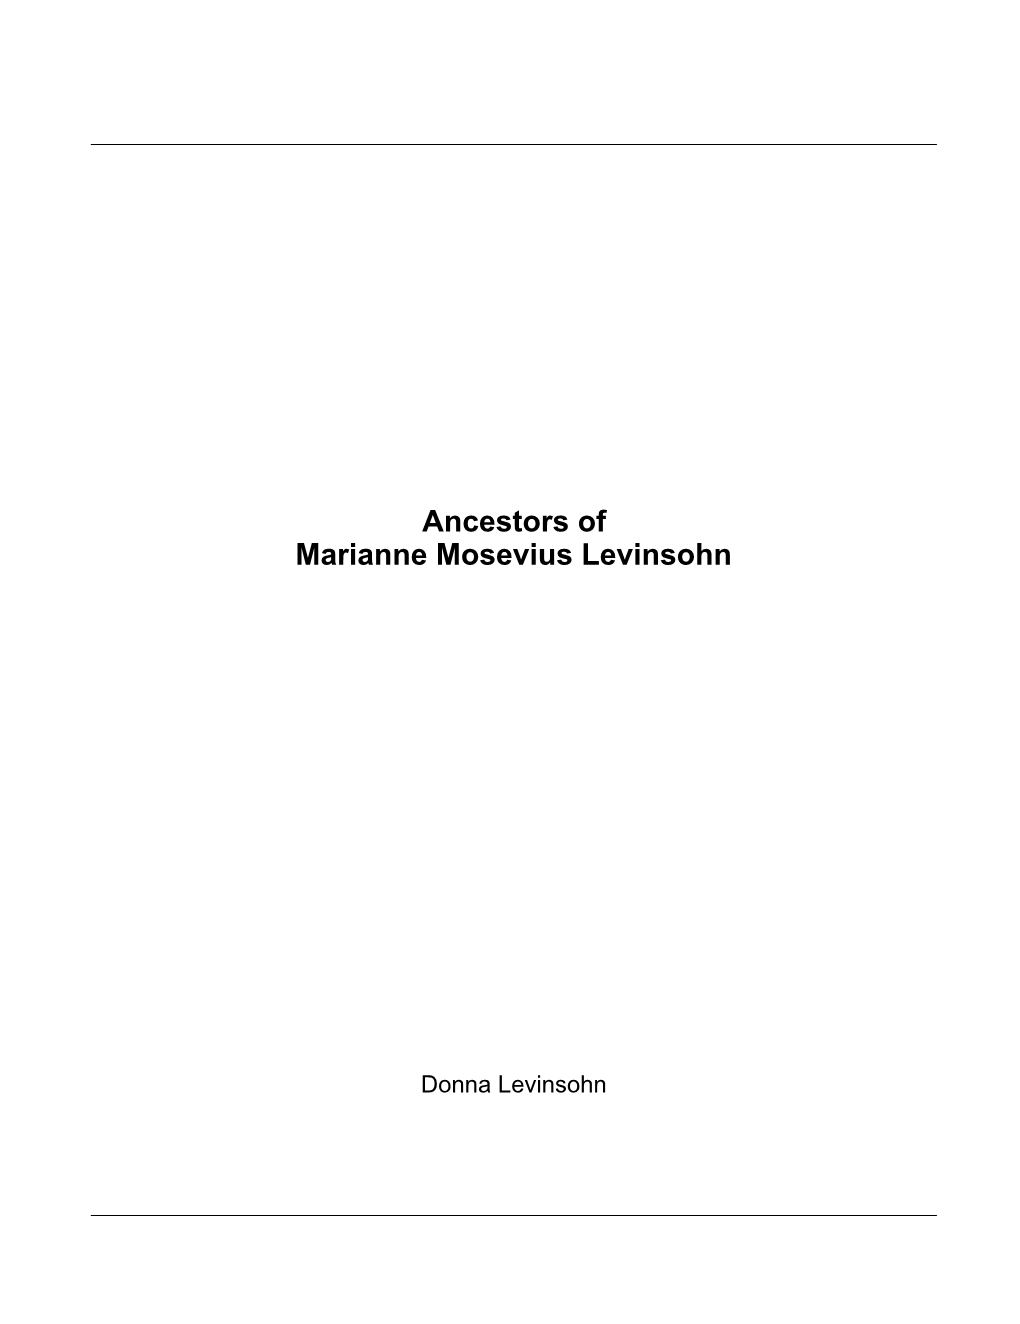 Ancestors of Marianne Mosevius Levinsohn